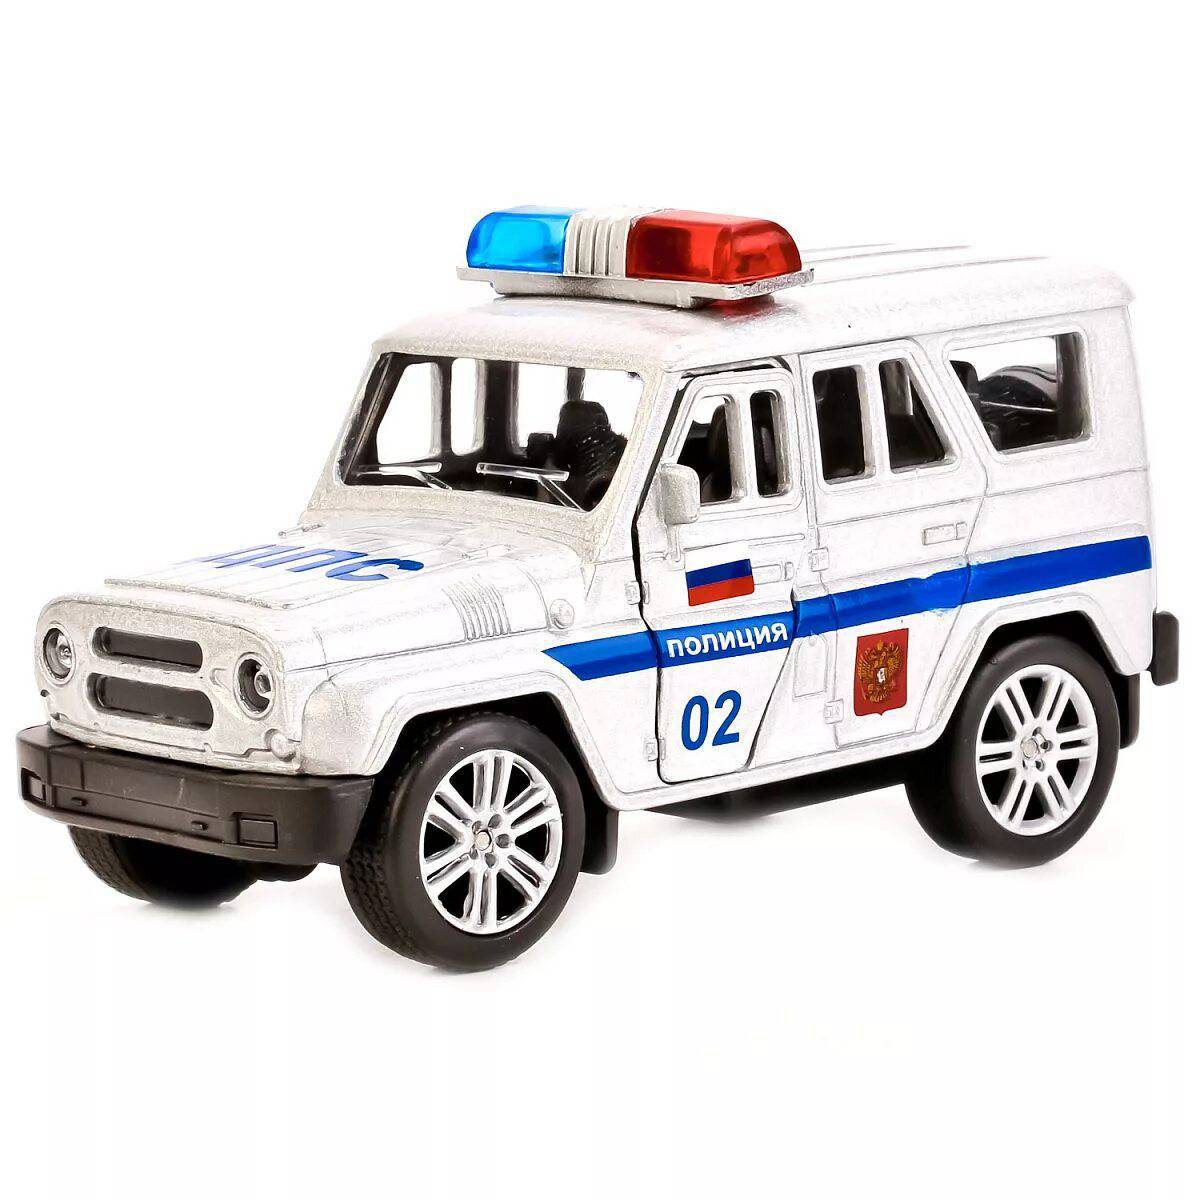 Полиция машина для детей #37